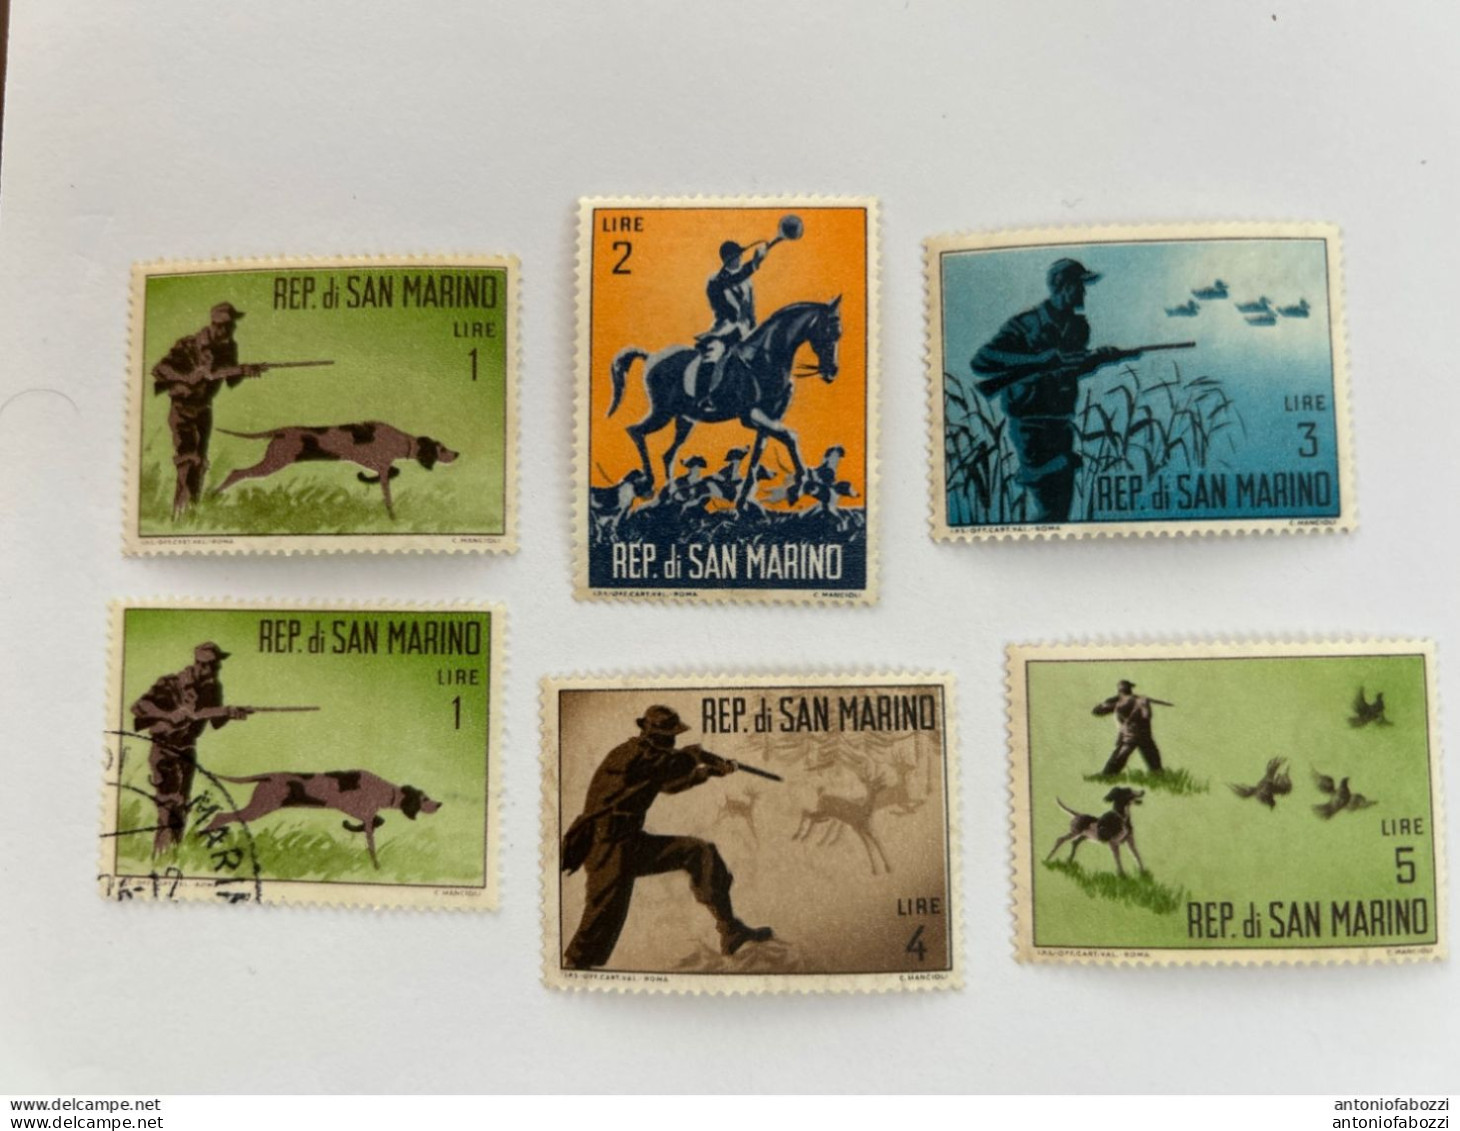 Interessante selezione di tanti francobolli usati/nuovi in ottimo stato (vedi foto), di buon valore filatelico e prezzo